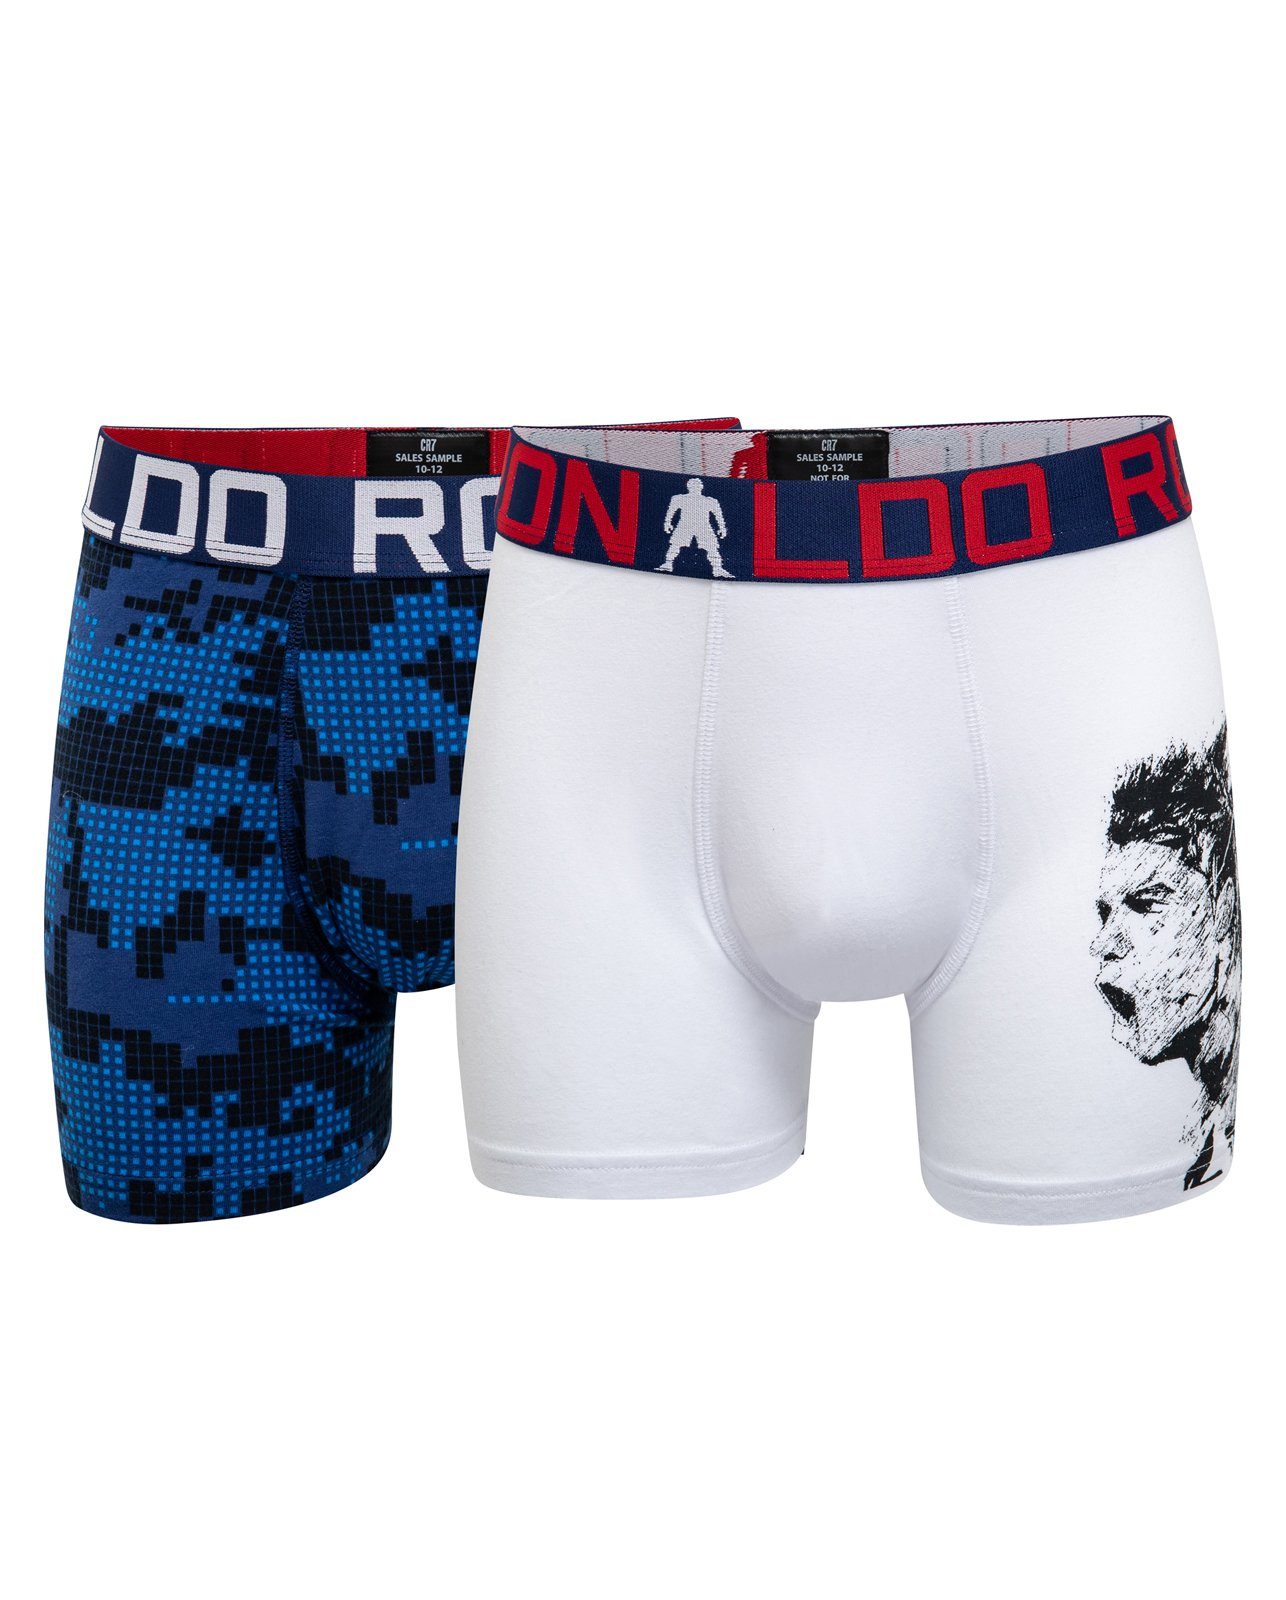 CR7 Boxershorts 4er Pack Boy Pants (Sparpack, 4er-Pack) Sortiert 535